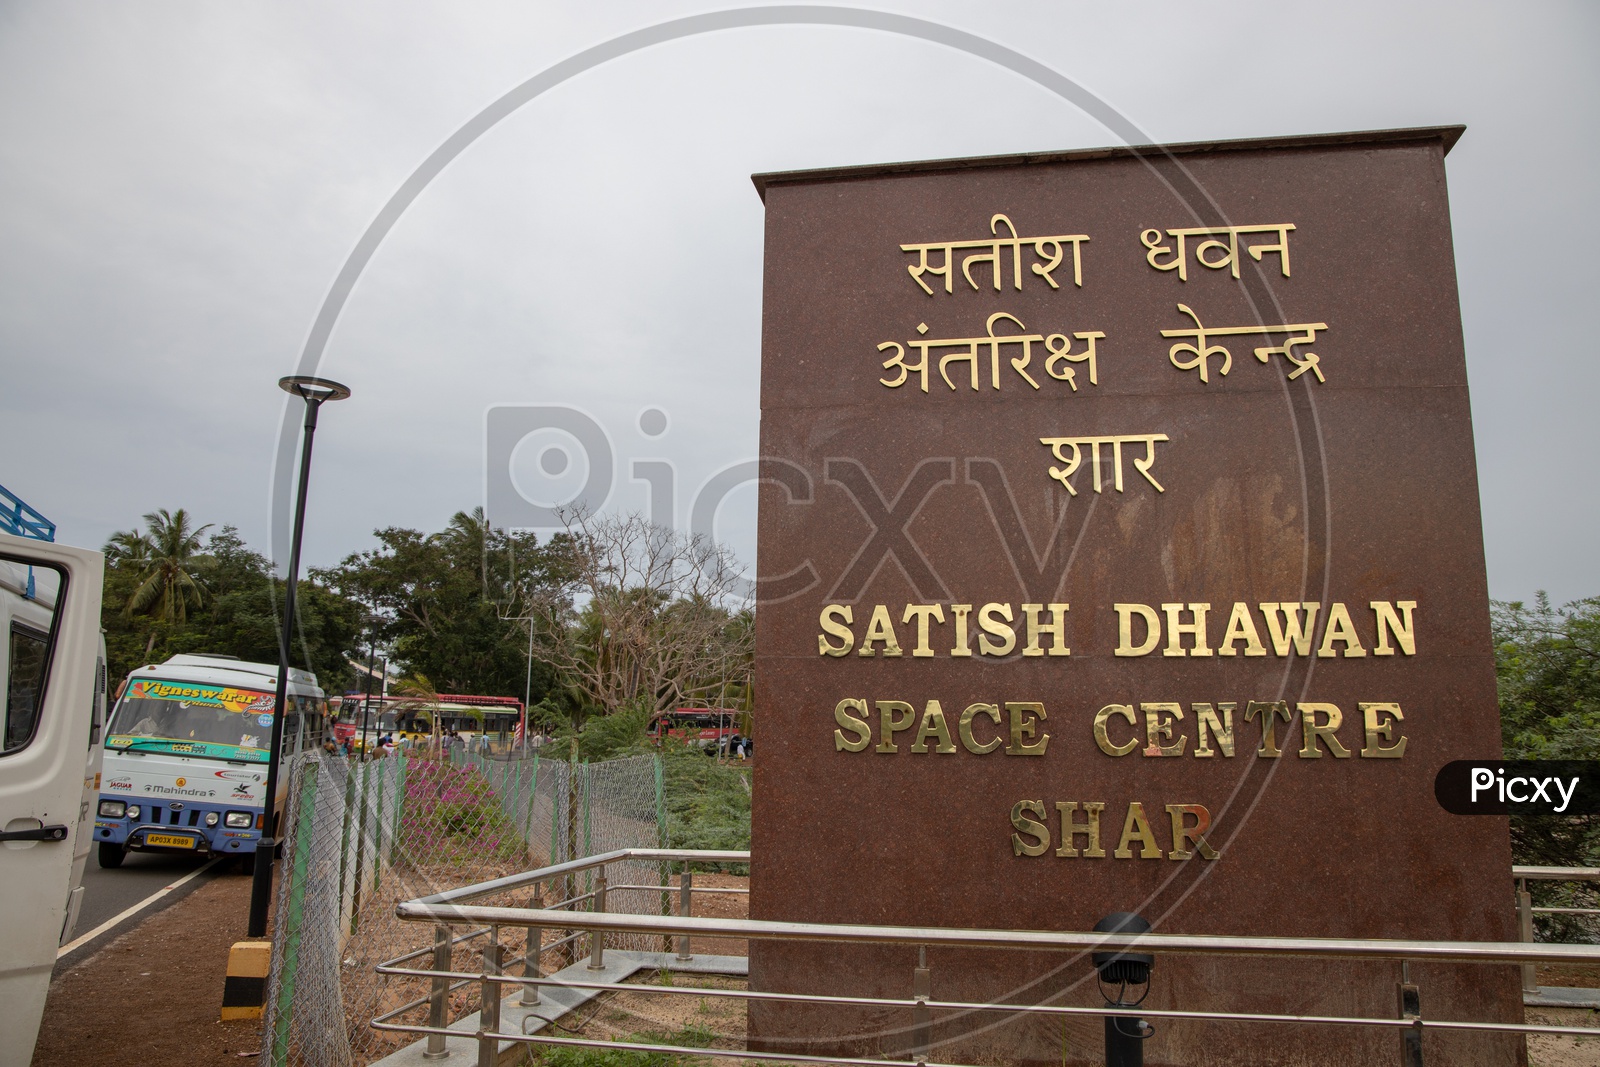 Satish Dhawan Space Centre SHAR  Rock Memorial At Sriharikota